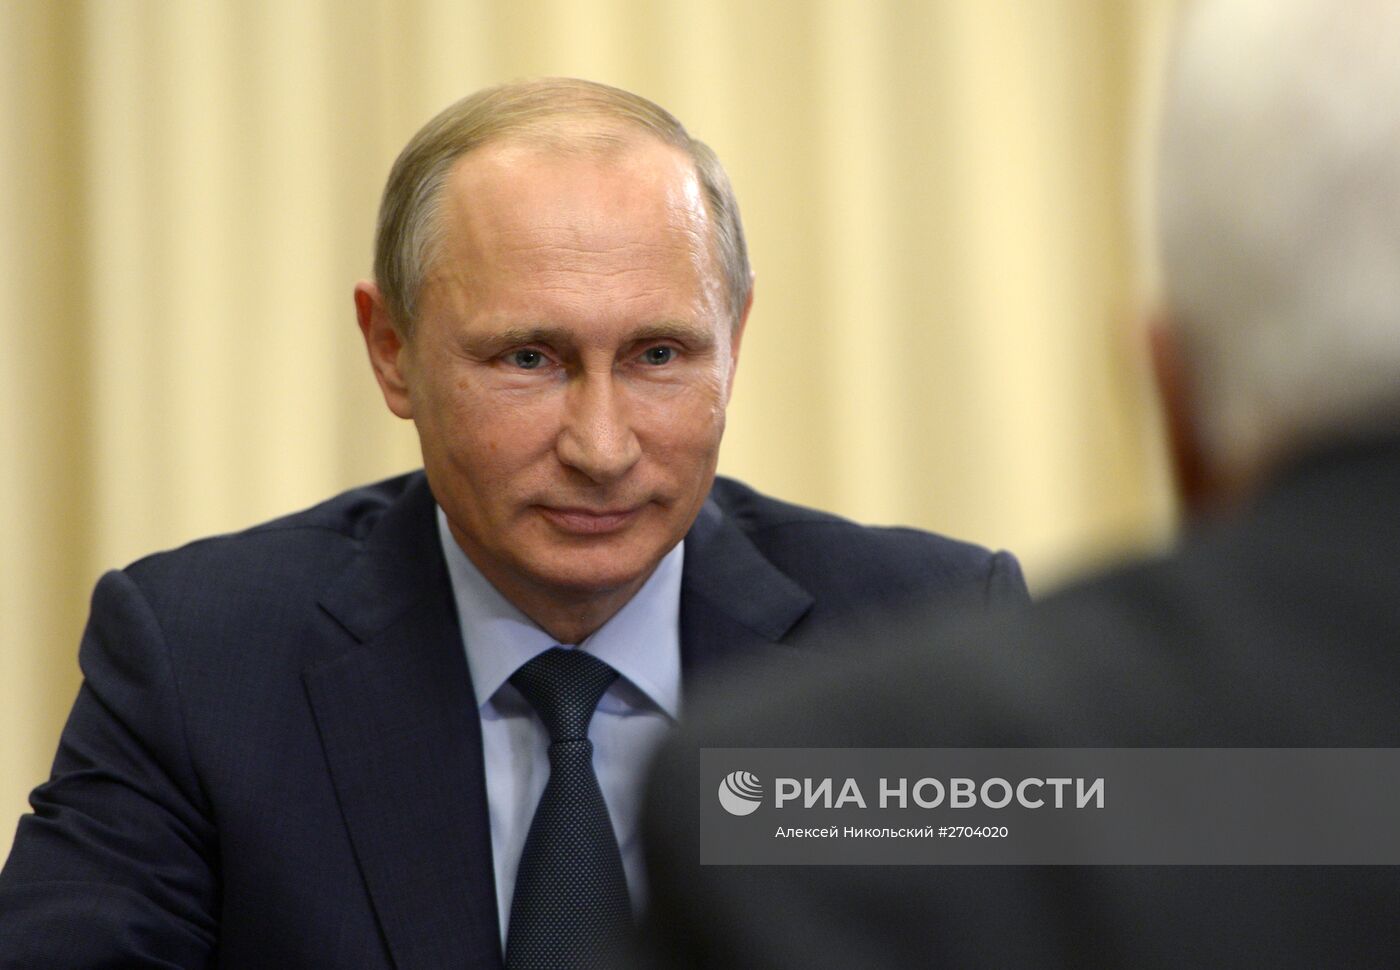 Встреча президента РФ В.Путина с президентом Палестины М.Аббасом